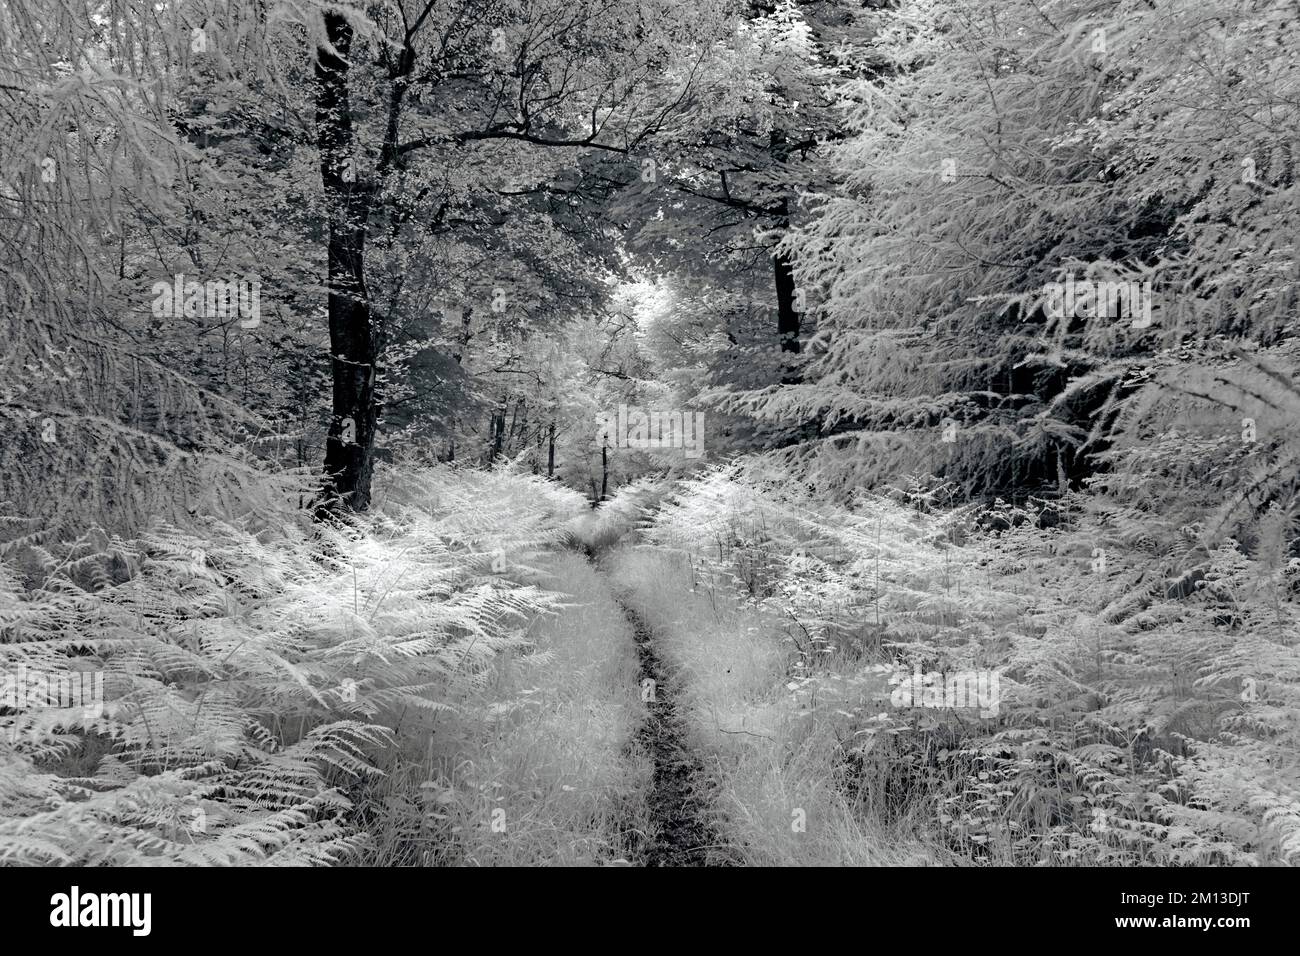 Photographie en noir et blanc d'une végétation luxuriante sur la zone de beauté naturelle exceptionnelle de Cannock Chase AONB dans le Staffordshire Angleterre Royaume-Uni Banque D'Images